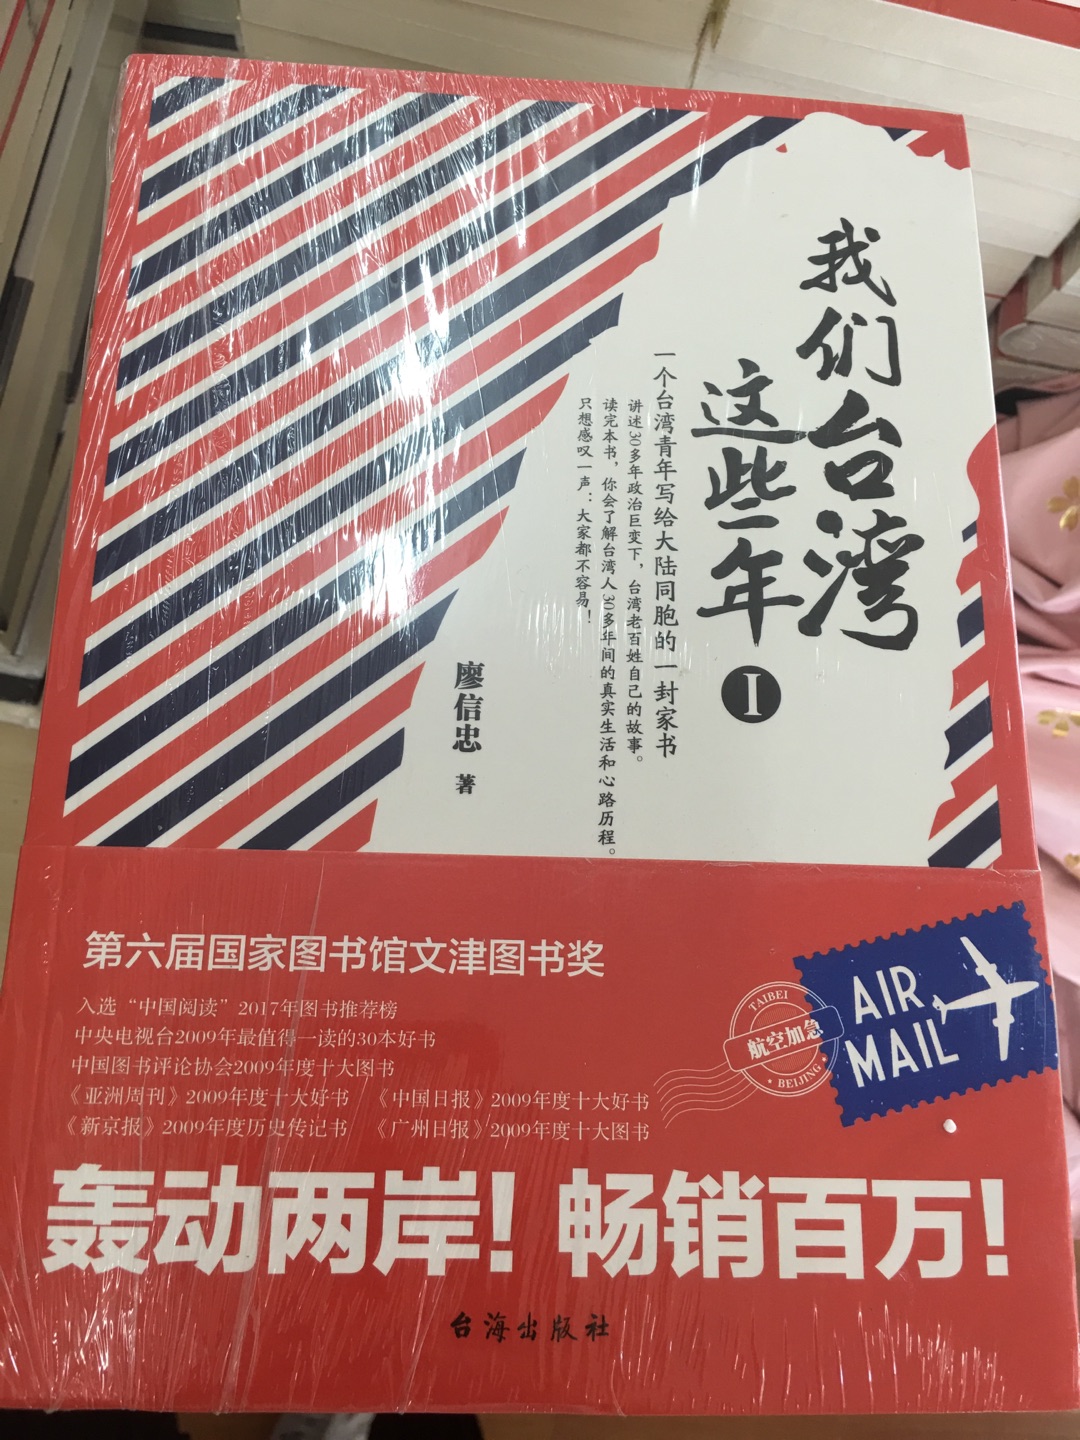 一个台湾青年写给大陆同胞的一封家书！很久没有看到这样有趣又动人的作品了，数次泪目，台湾现代化进程中居然有这么多令人意想不到的故事，不论是政治还是百姓生活，都给人以耳目一新之感，好书！听我的，一定要读完它！